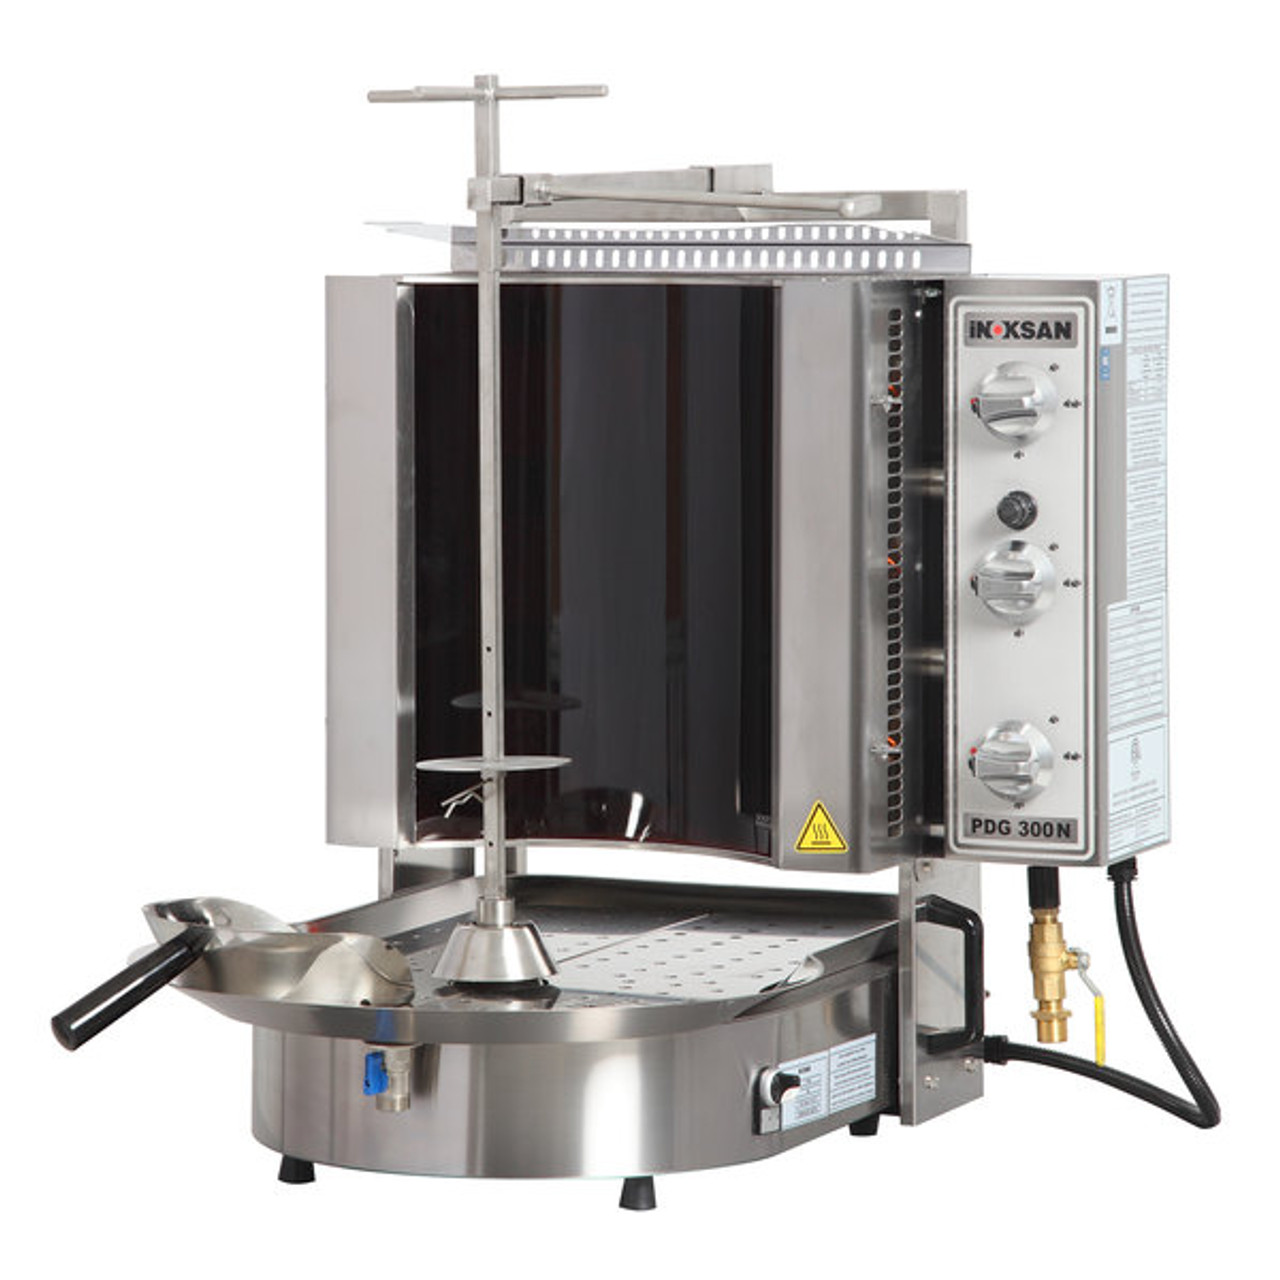 Doner Kebab Machine / Vertical Broiler with Robax Glass Shield - 20-100 lb. Capacity-Inoksan PDG 300NR  